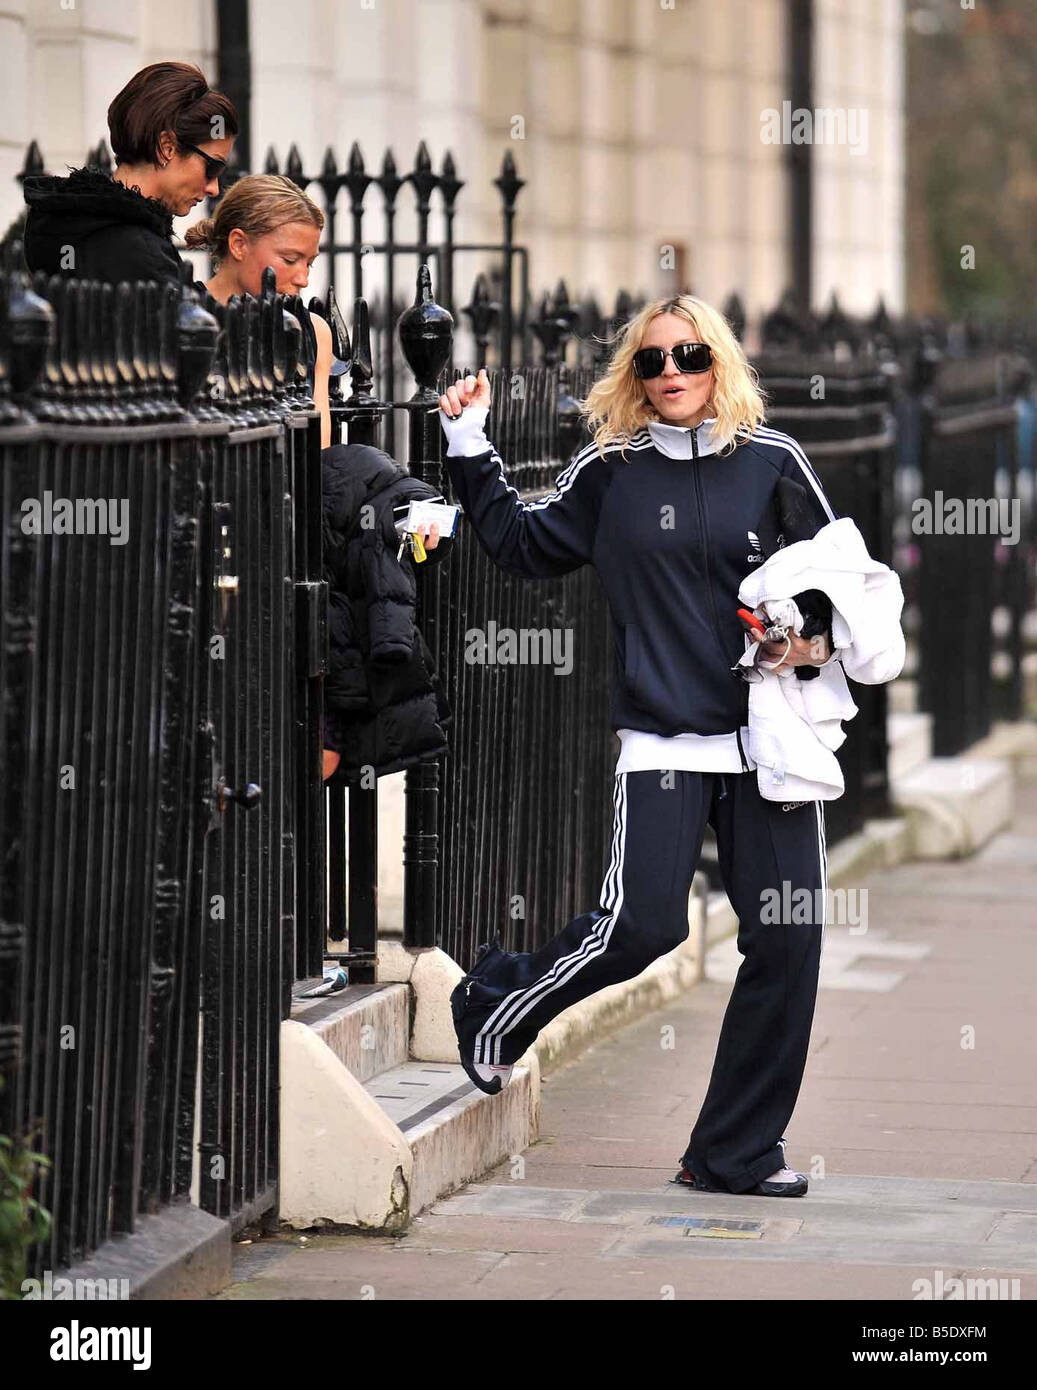 Madonna arrivando presso la sua casa di Londra oggi dopo aver visitato la palestra la superstar pop indossava piuttosto grandi occhiali da sole dopo aver fotografato la scorsa notte misteriosa sportivi lividi attorno alla sua guancia e occhio sinistro 22 Gennaio 2008 Foto Stock